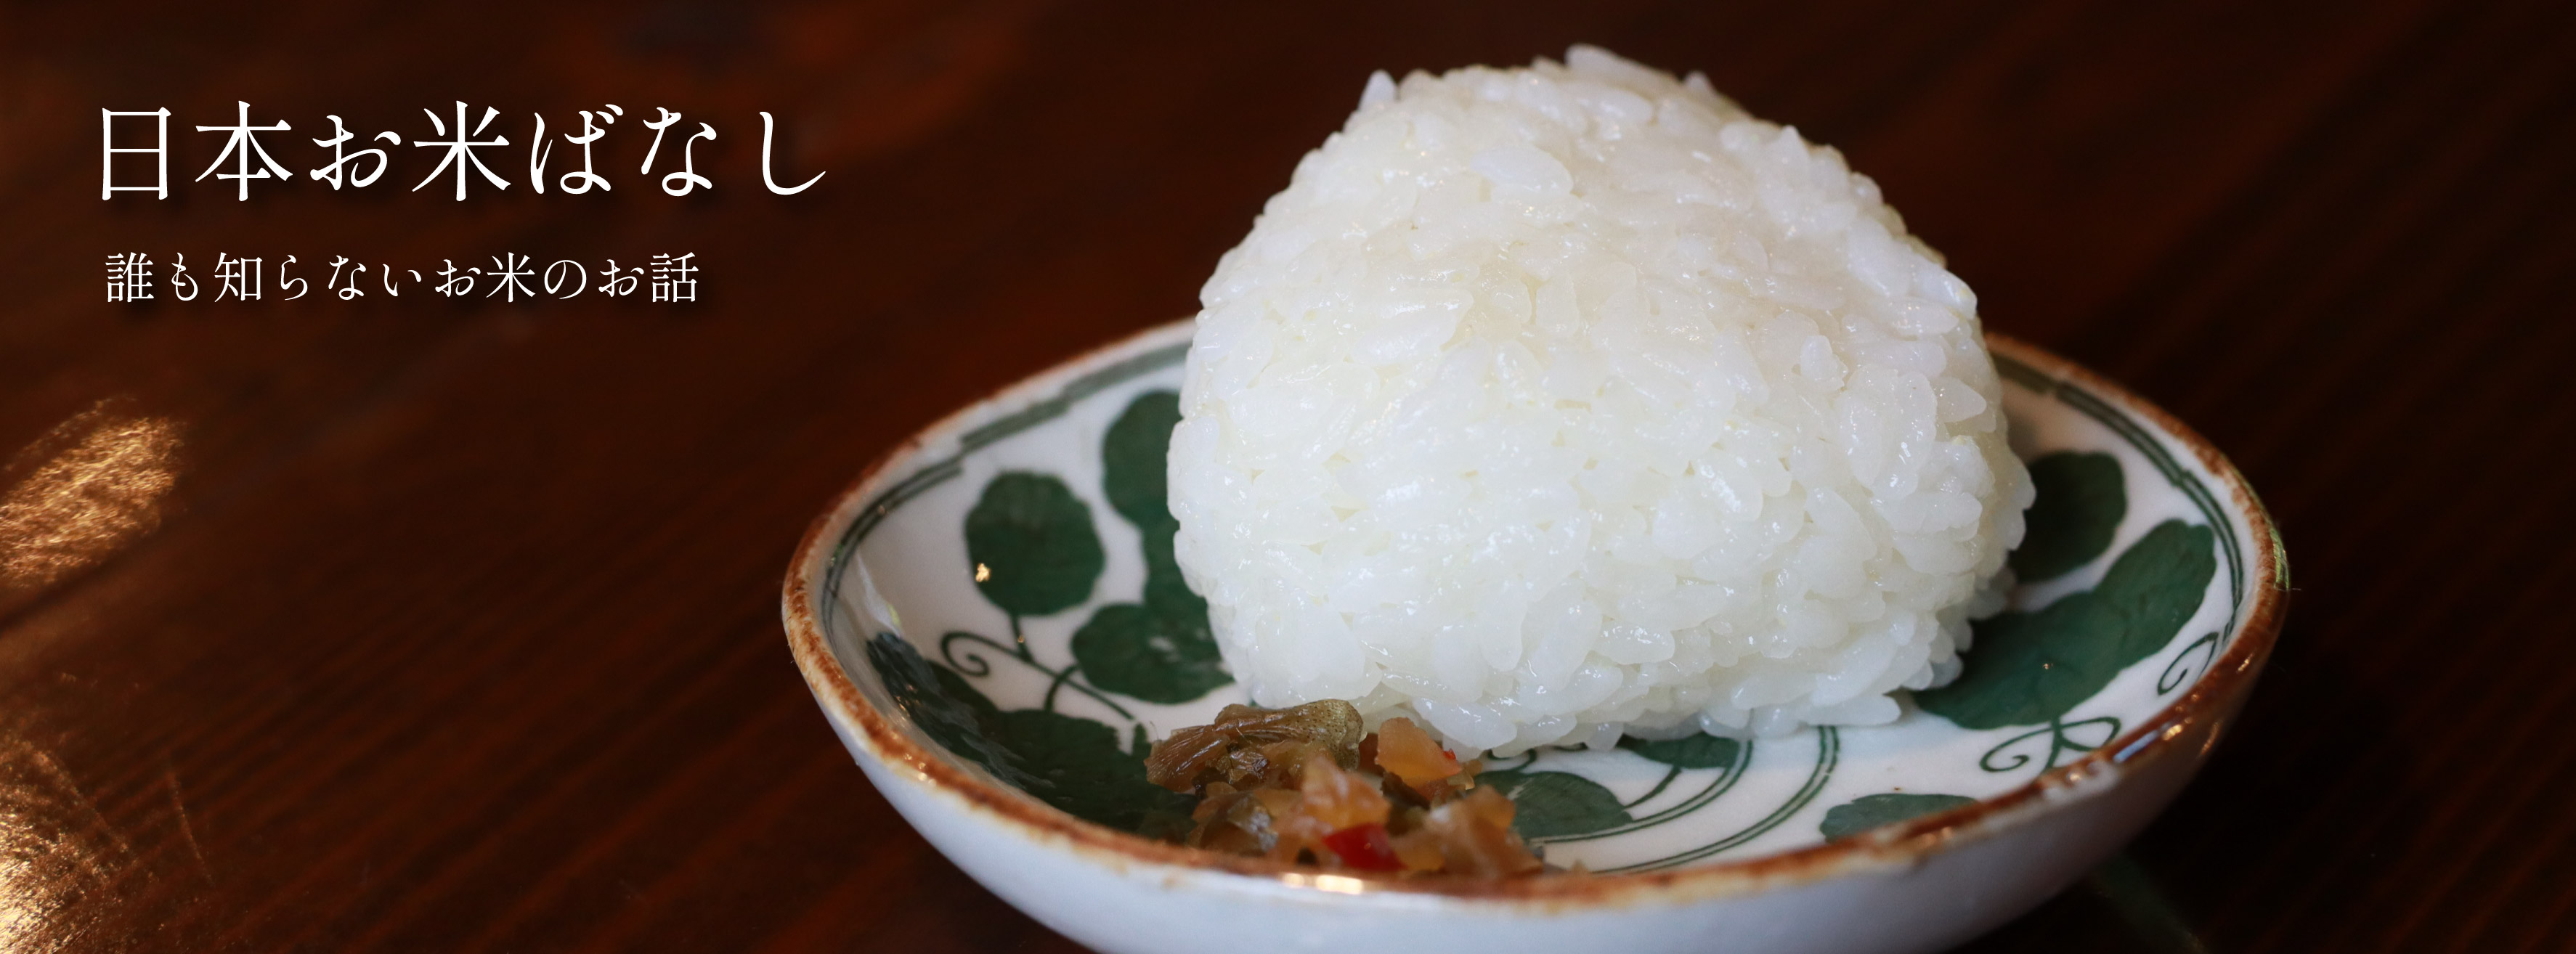 日本お米ばなし vol.25 食文化編「米をなんの葉に包むのか。」